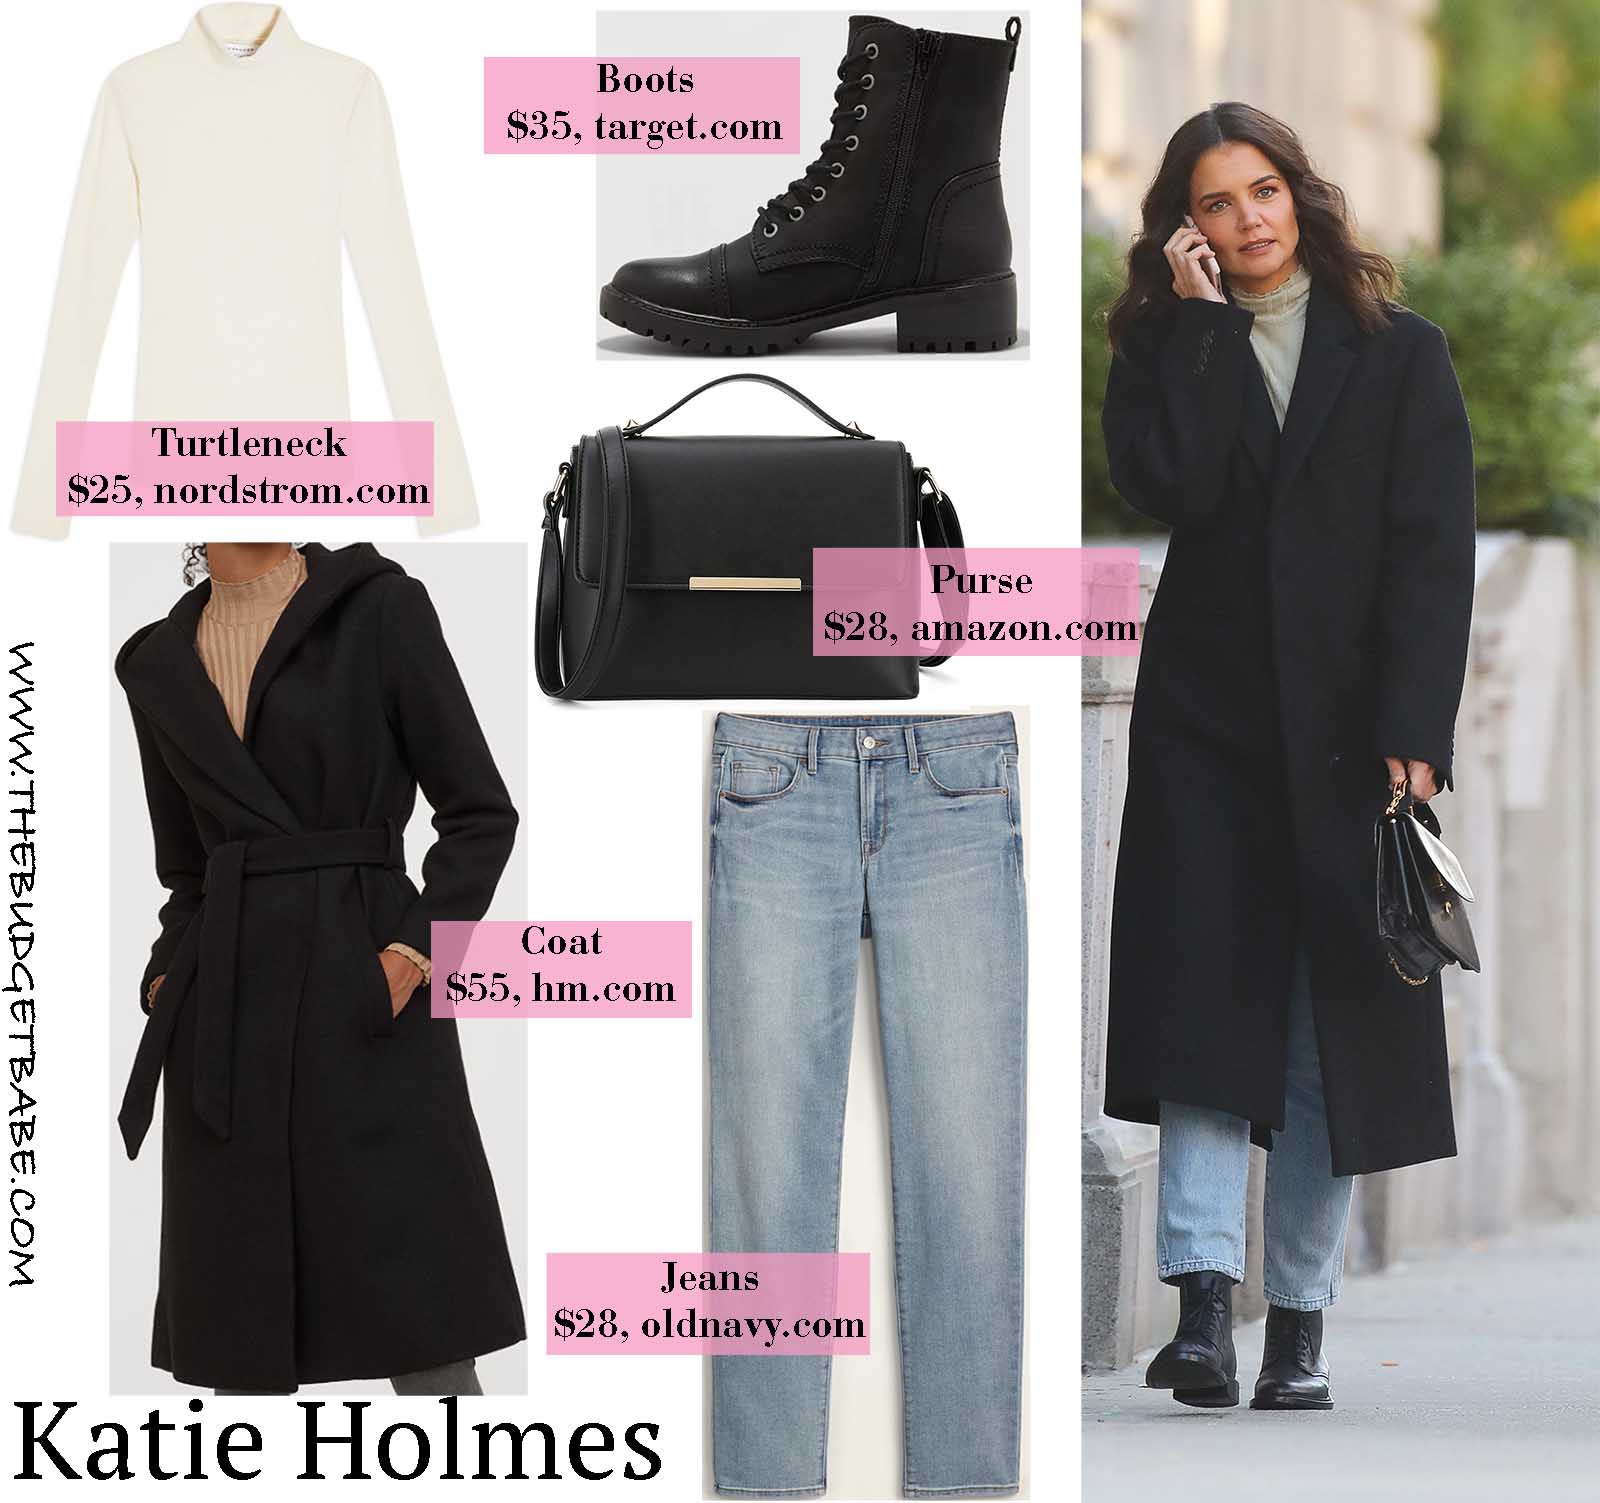 Katie Holmes stays warm in a sleek oversized wool coat.